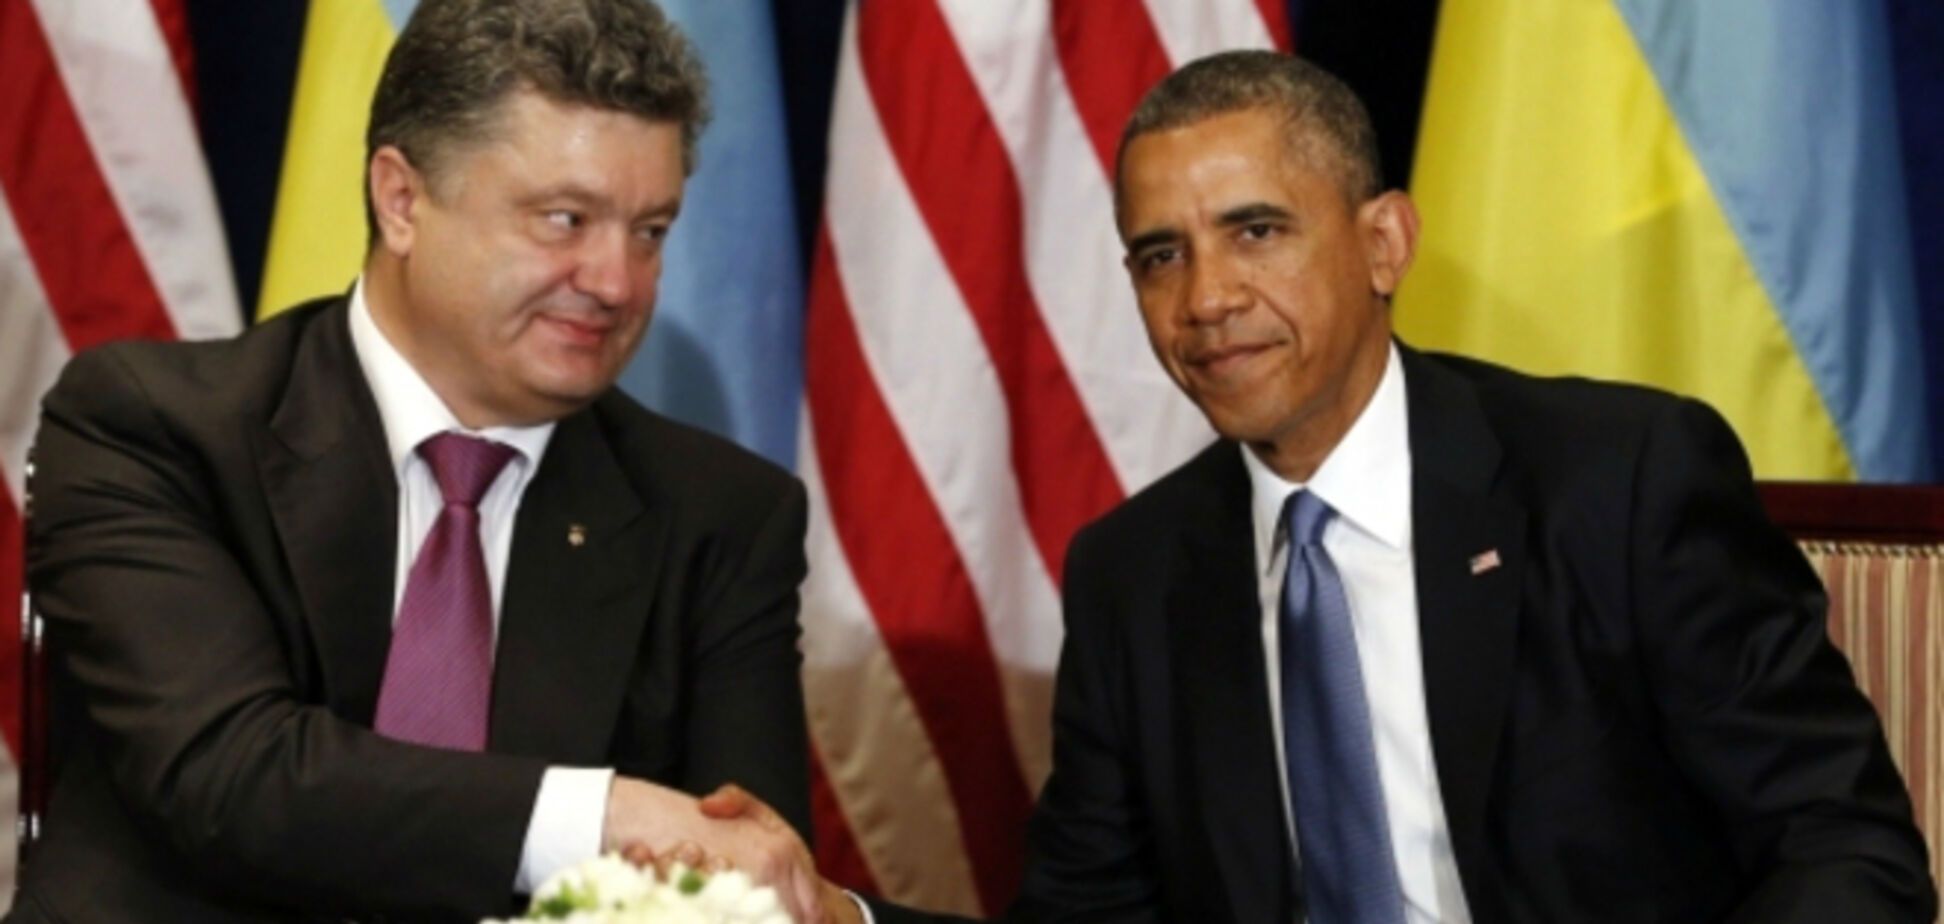  Порошенко и Обама договорились о двухсторонней встрече в начале сентября